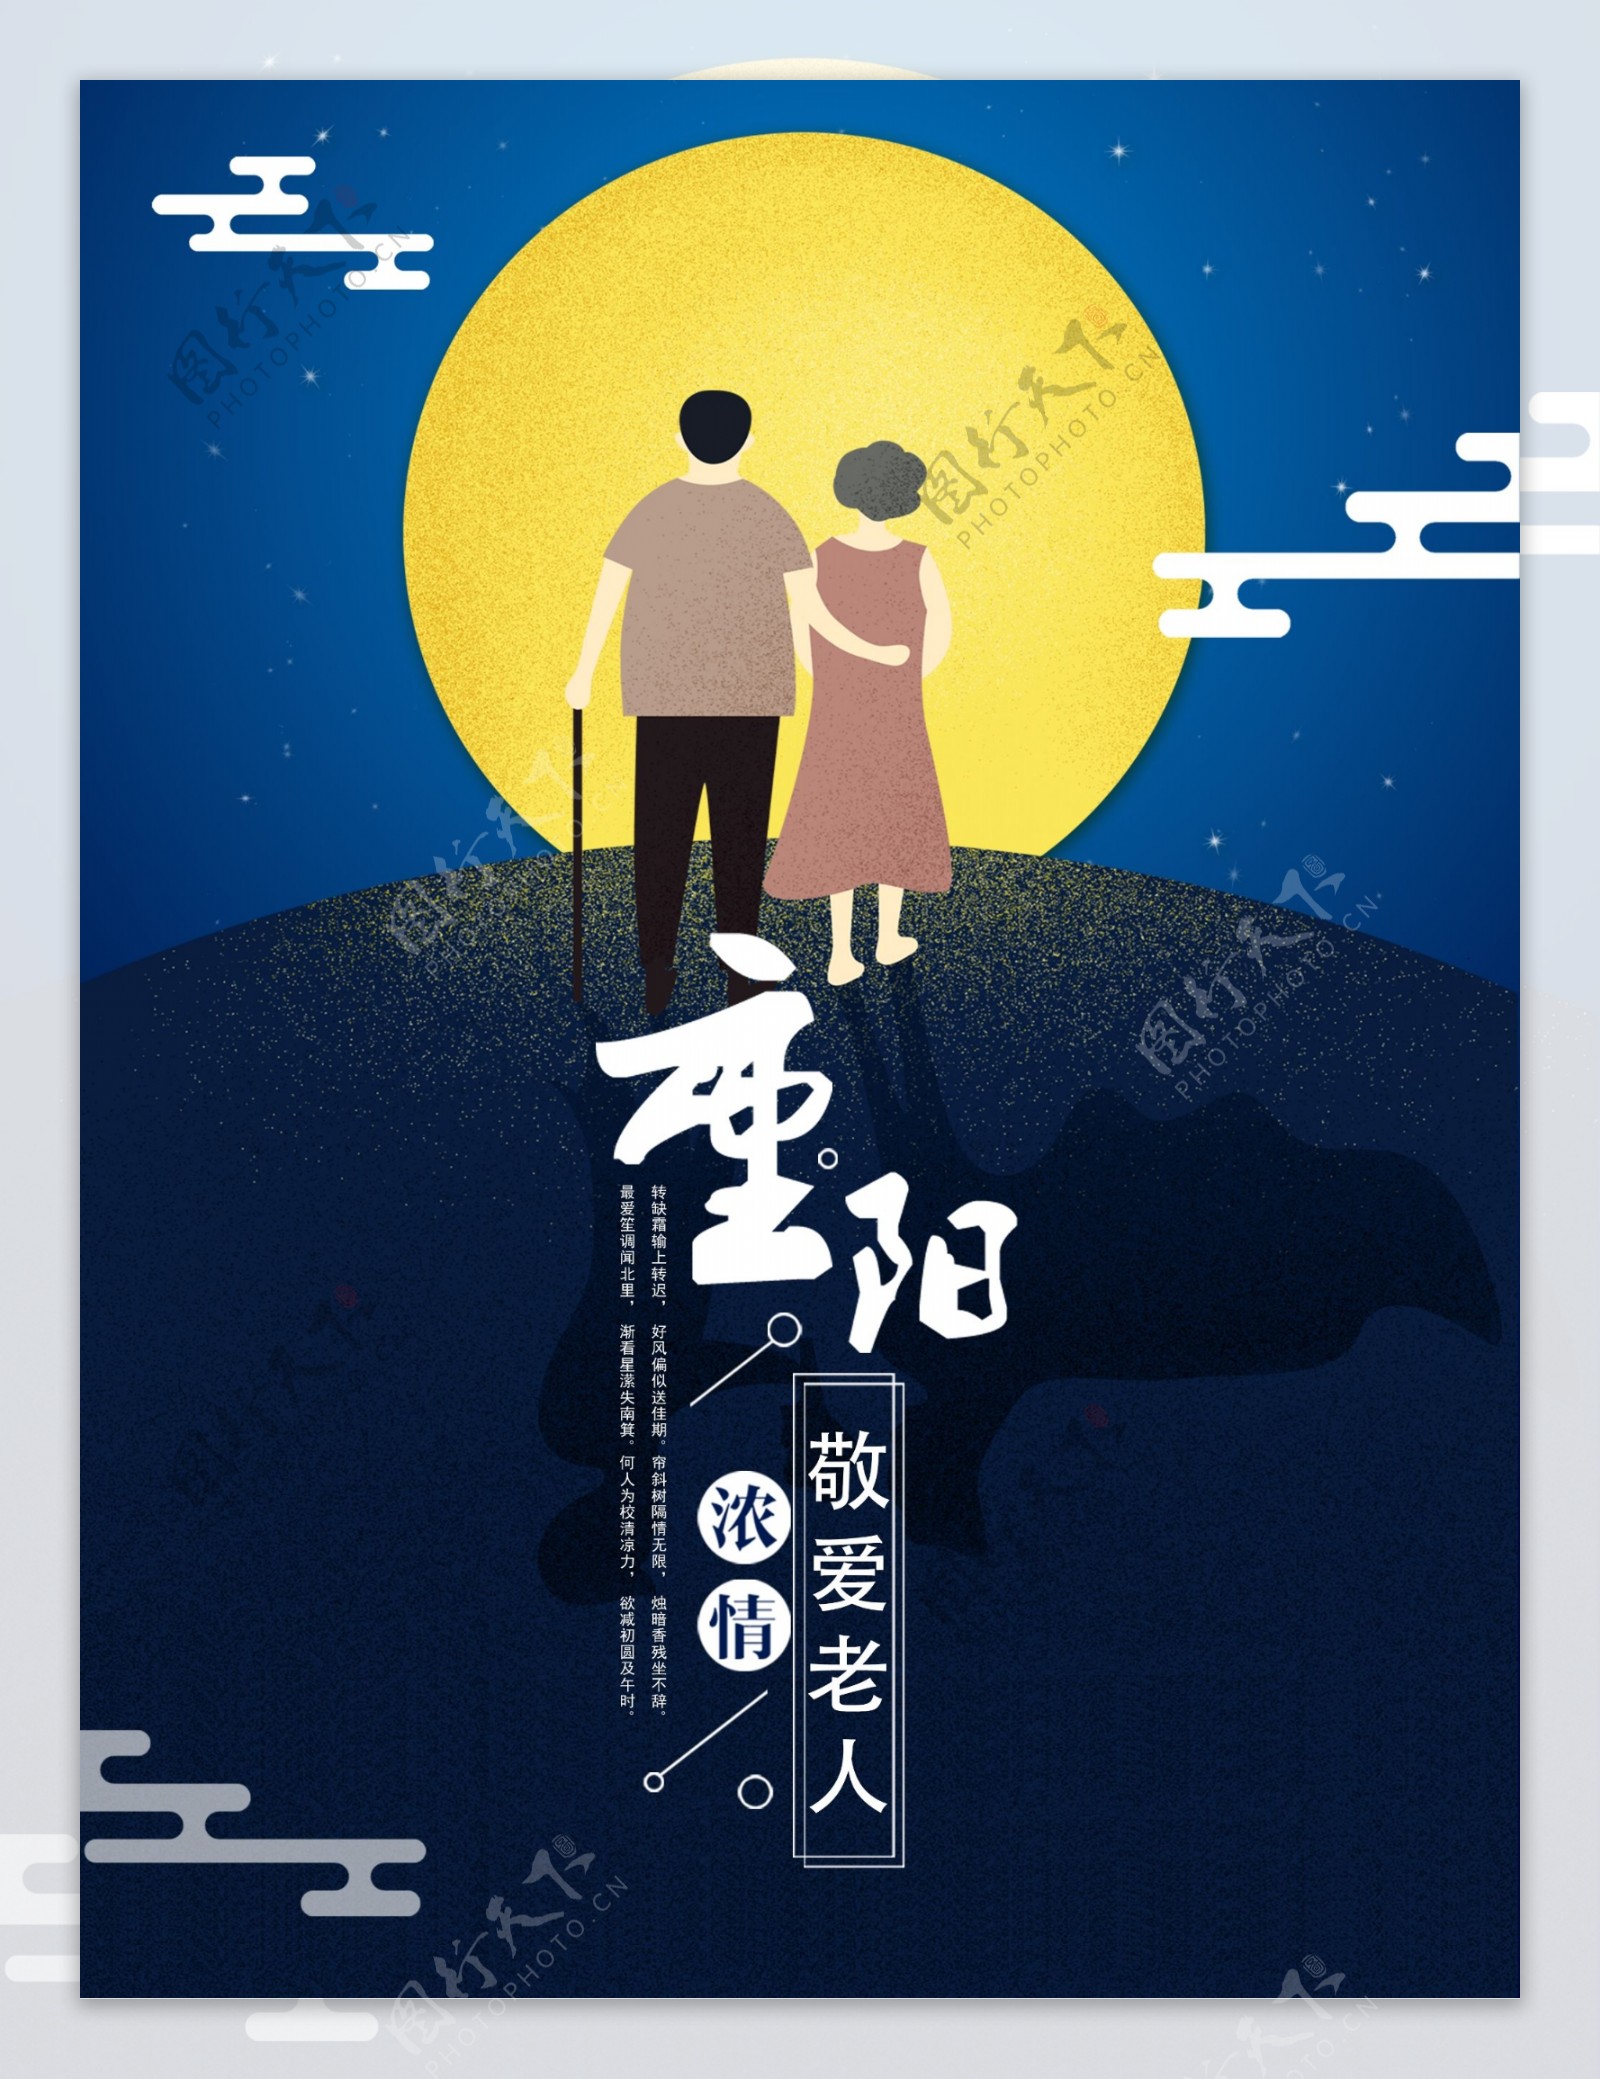 九九重阳节节日海报设计